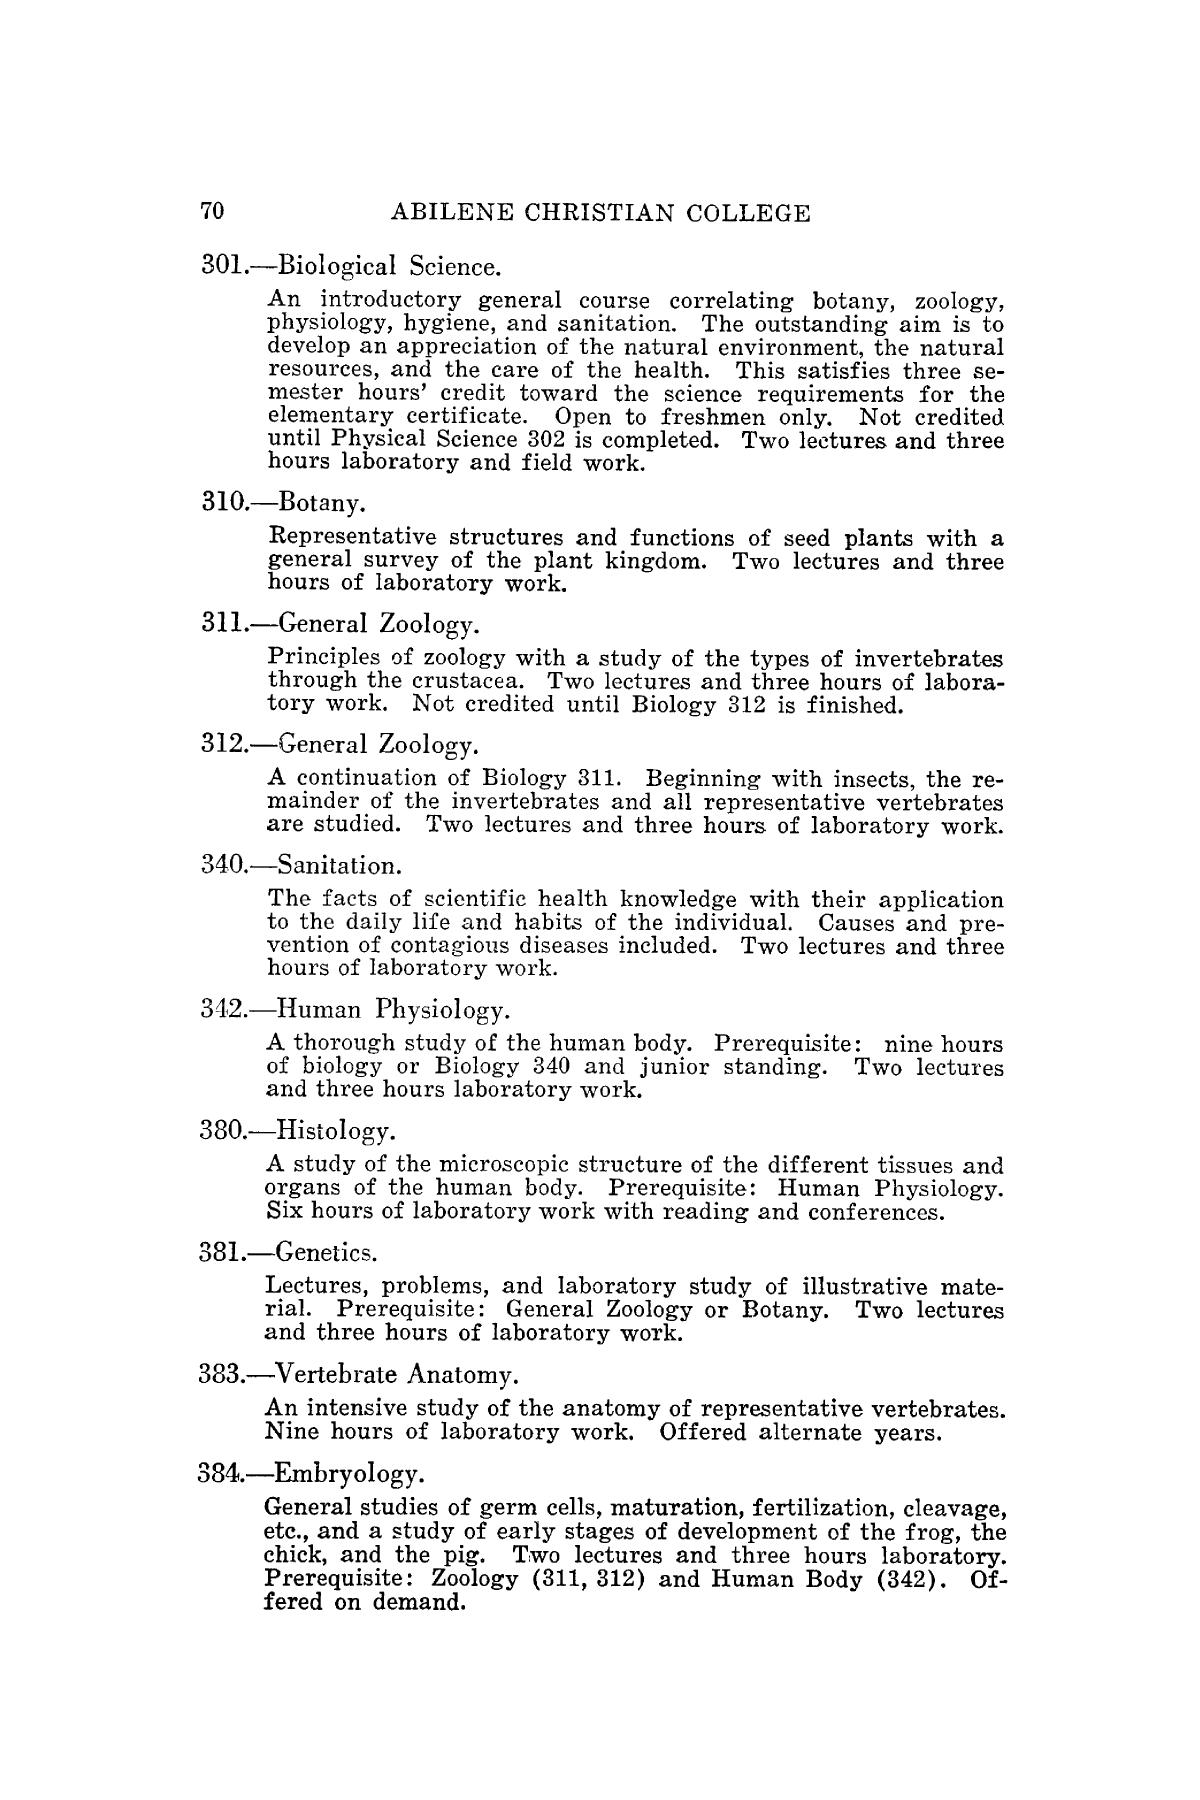 Catalog of Abilene Christian College, 1939-1940
                                                
                                                    70
                                                